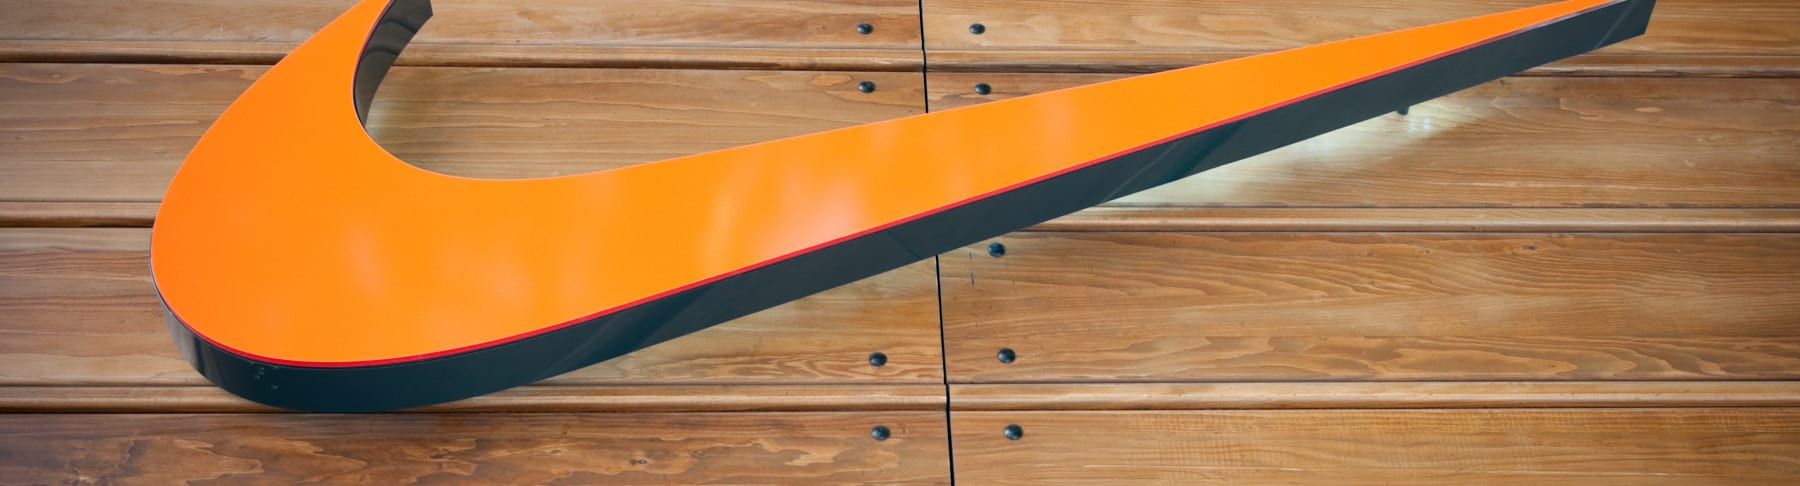 Nike orange swoosh on wooden background.